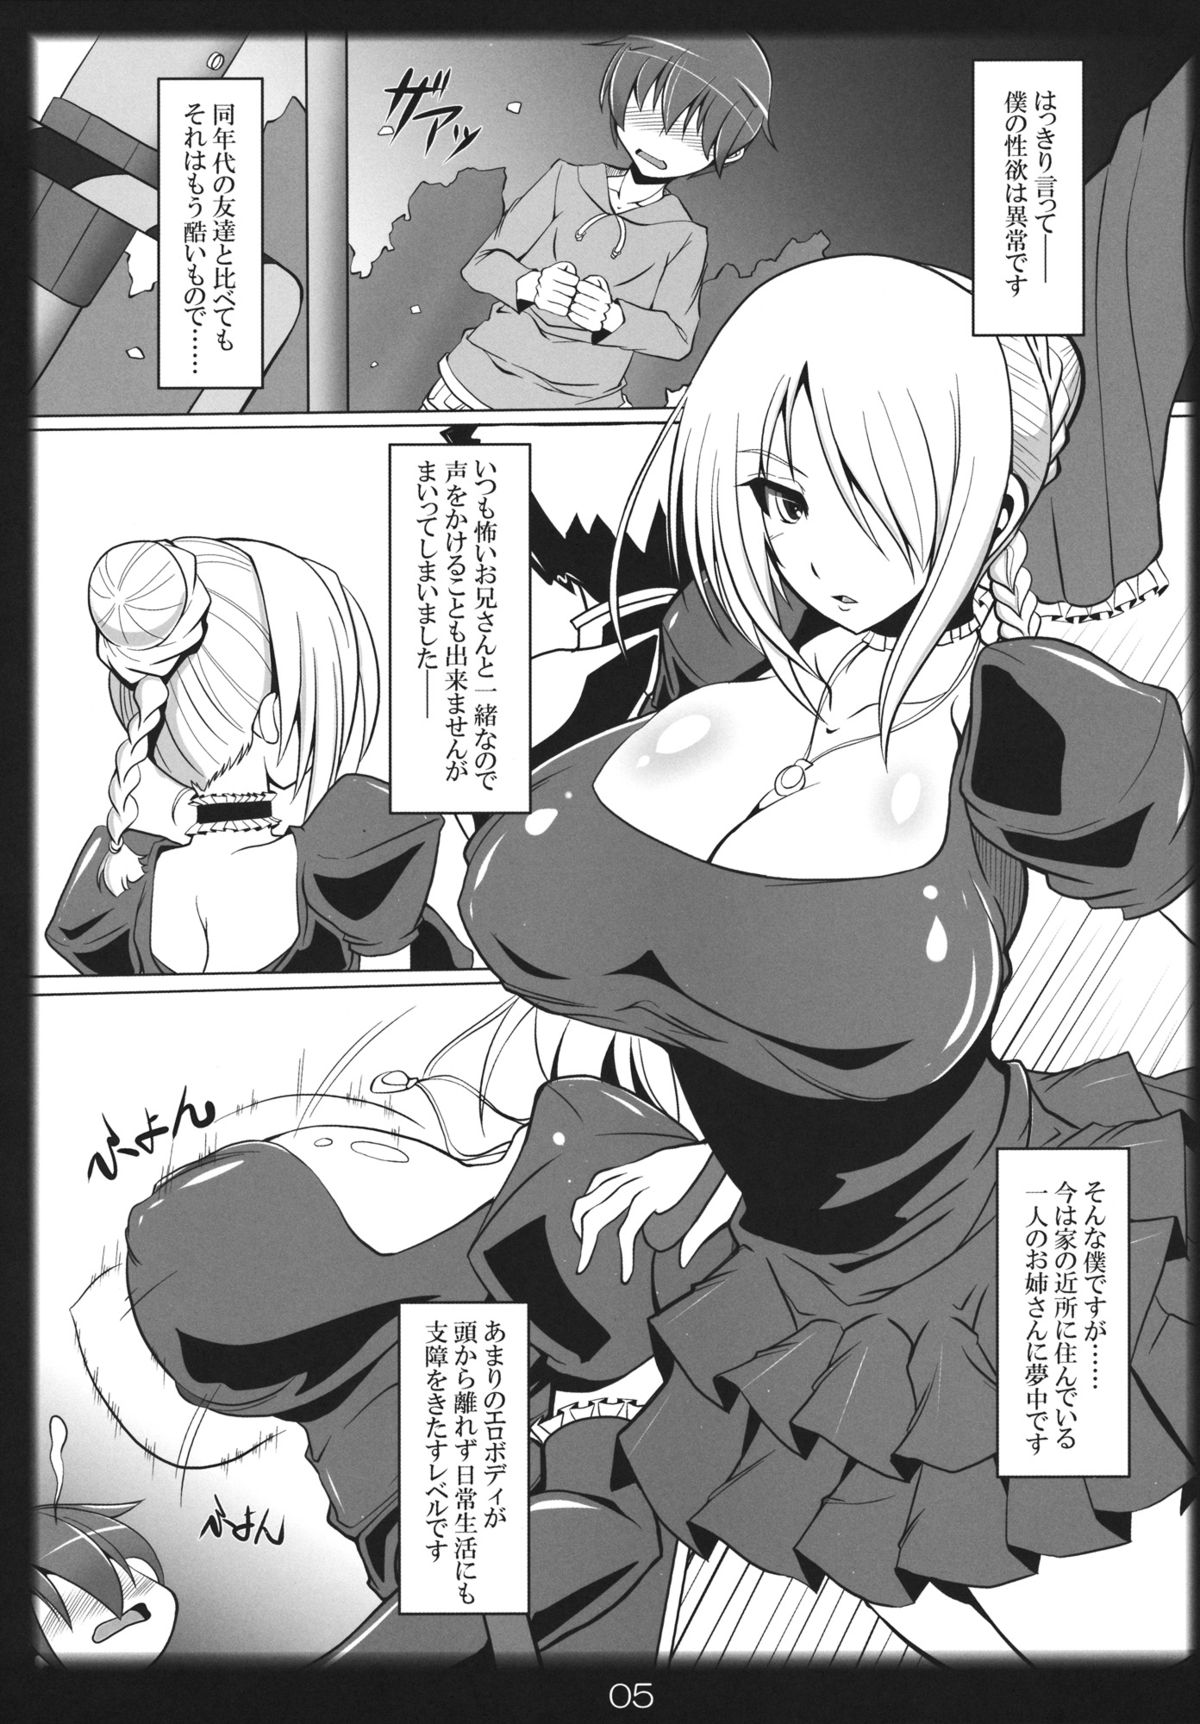 Beelzebub Hilda Hentai - Yobaretemasuyo, Hilda-san. - Page 4 - HentaiEra